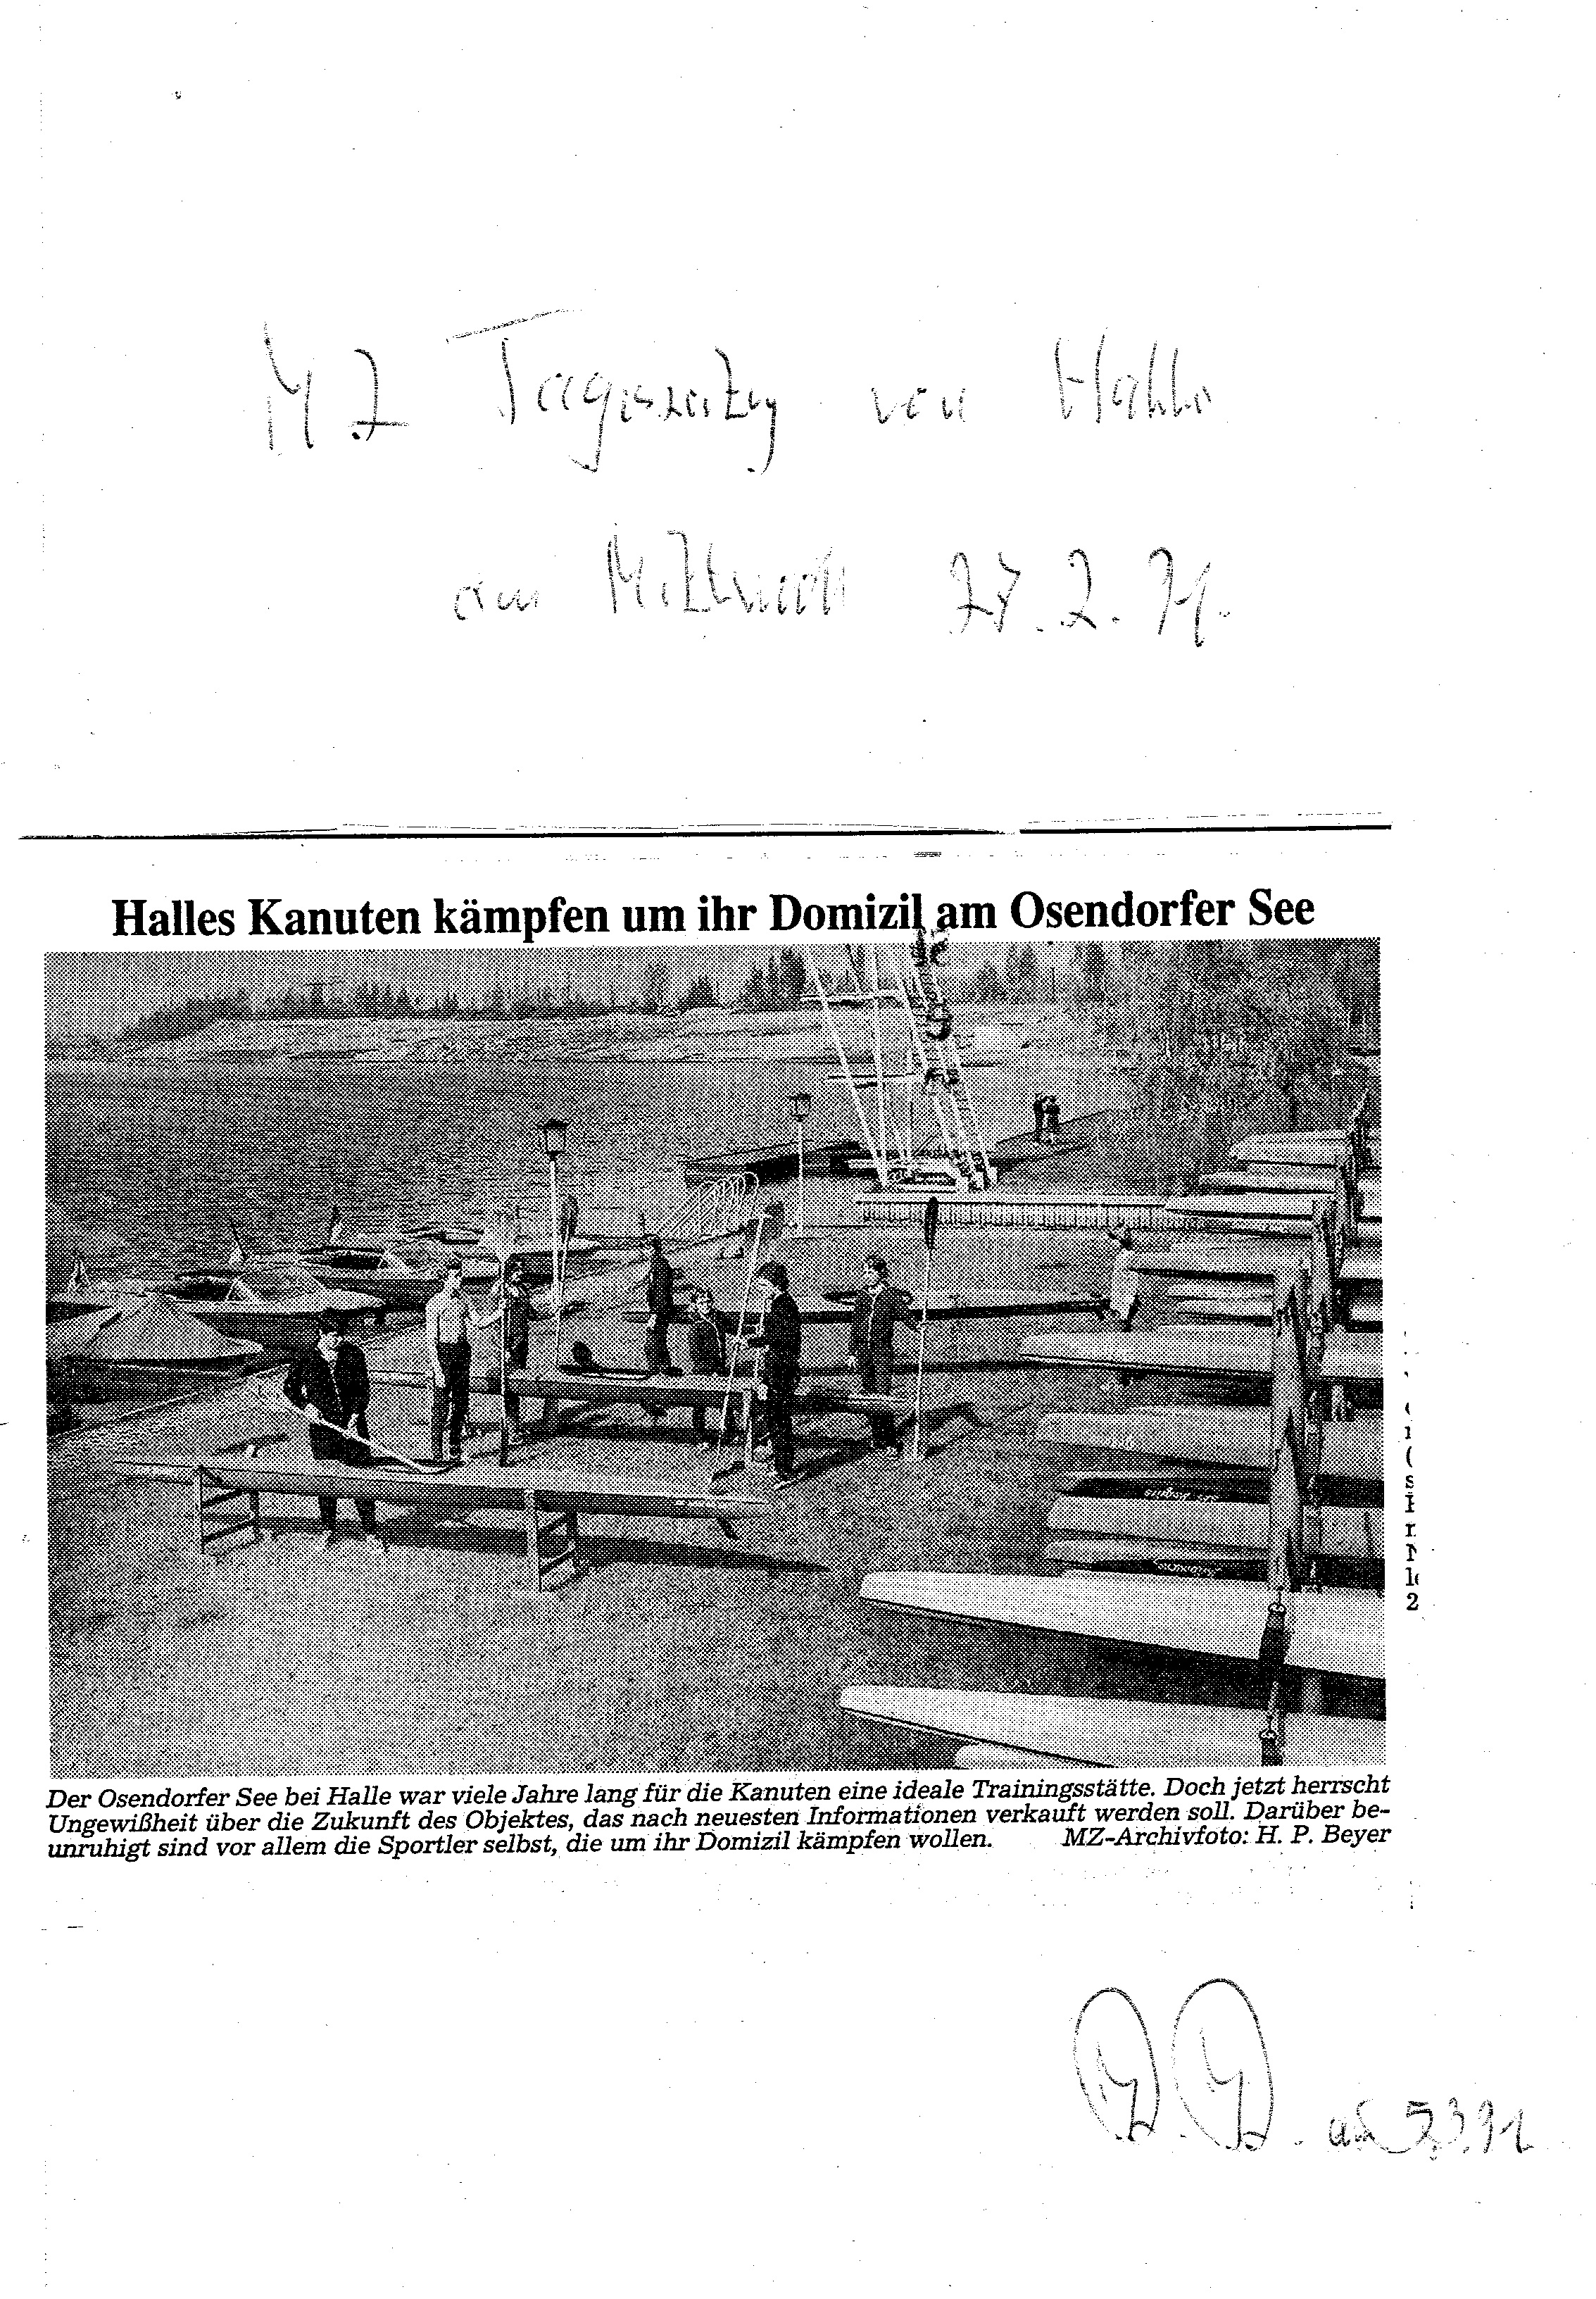 1991-02-27 MU Halles Kanuten kämpfen um Ihr Domizil am Osendorfer See